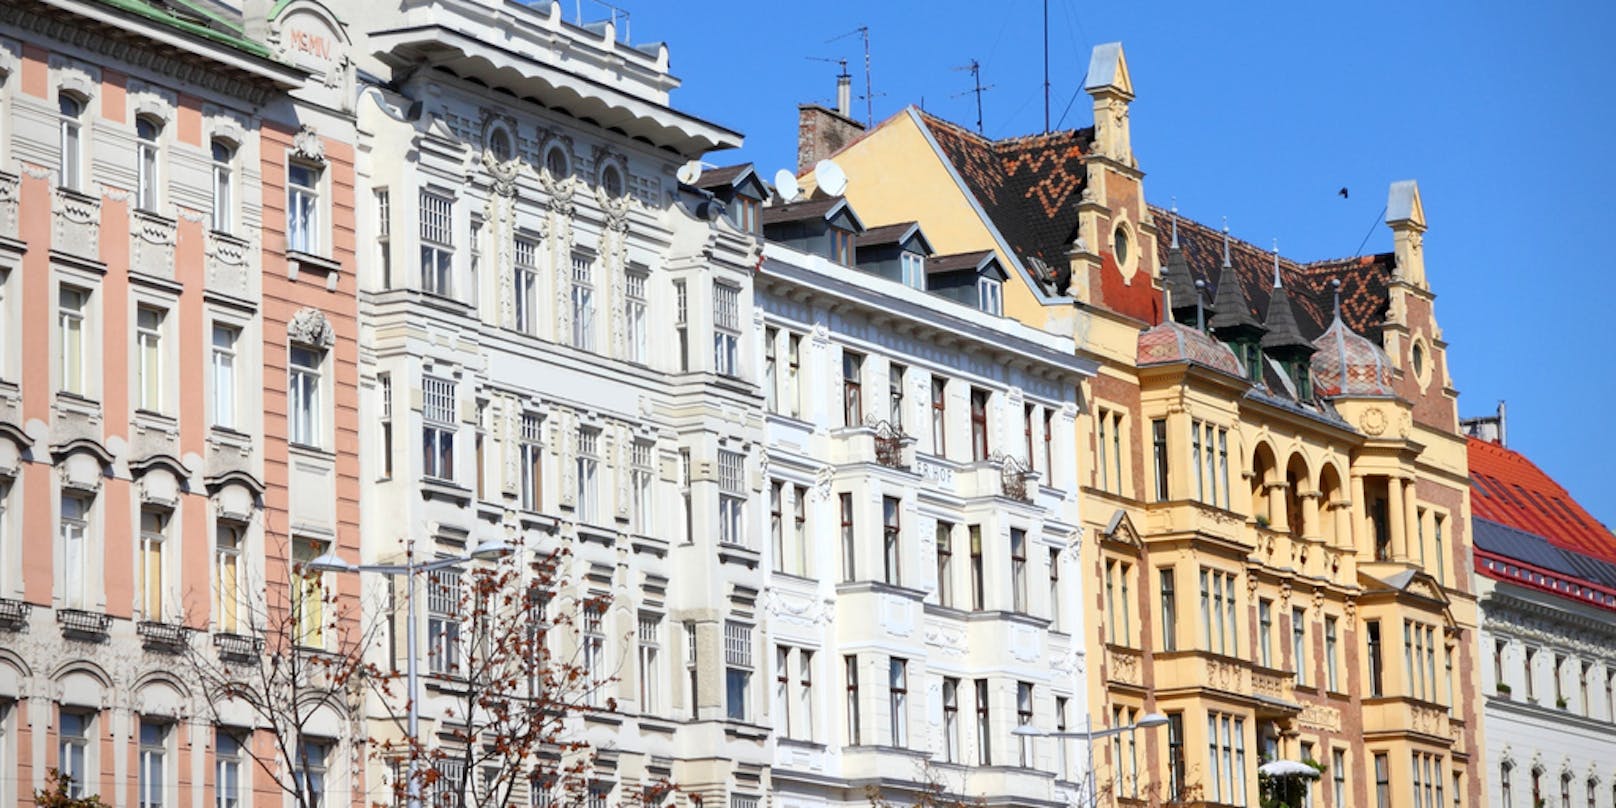 Mietpreise für Wohnungen in Wien stiegen besonders stark an.